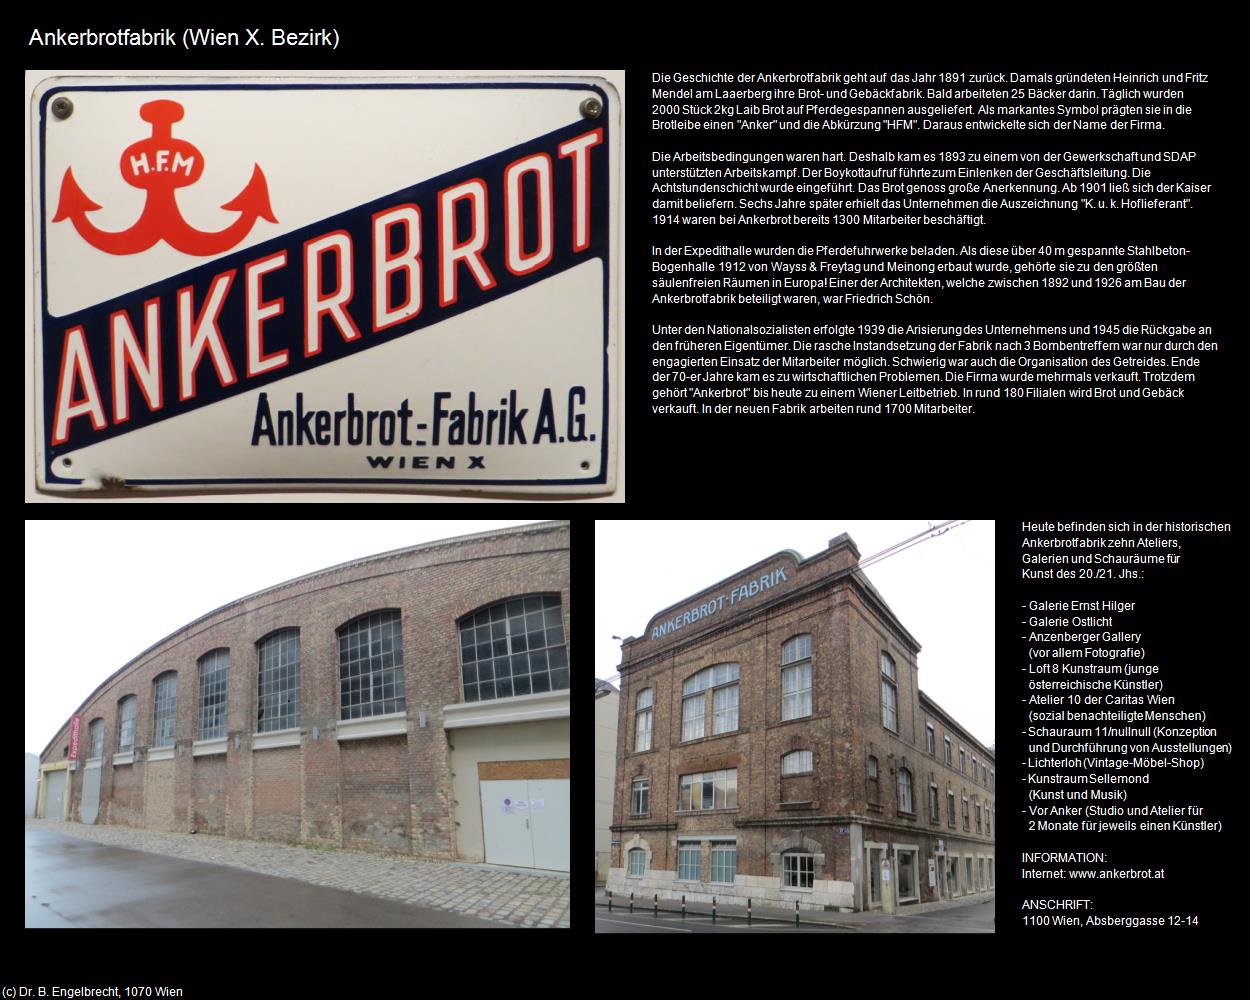 Ankerbrotfabrik (X. Bezirk-Favoriten) in Kulturatlas-WIEN